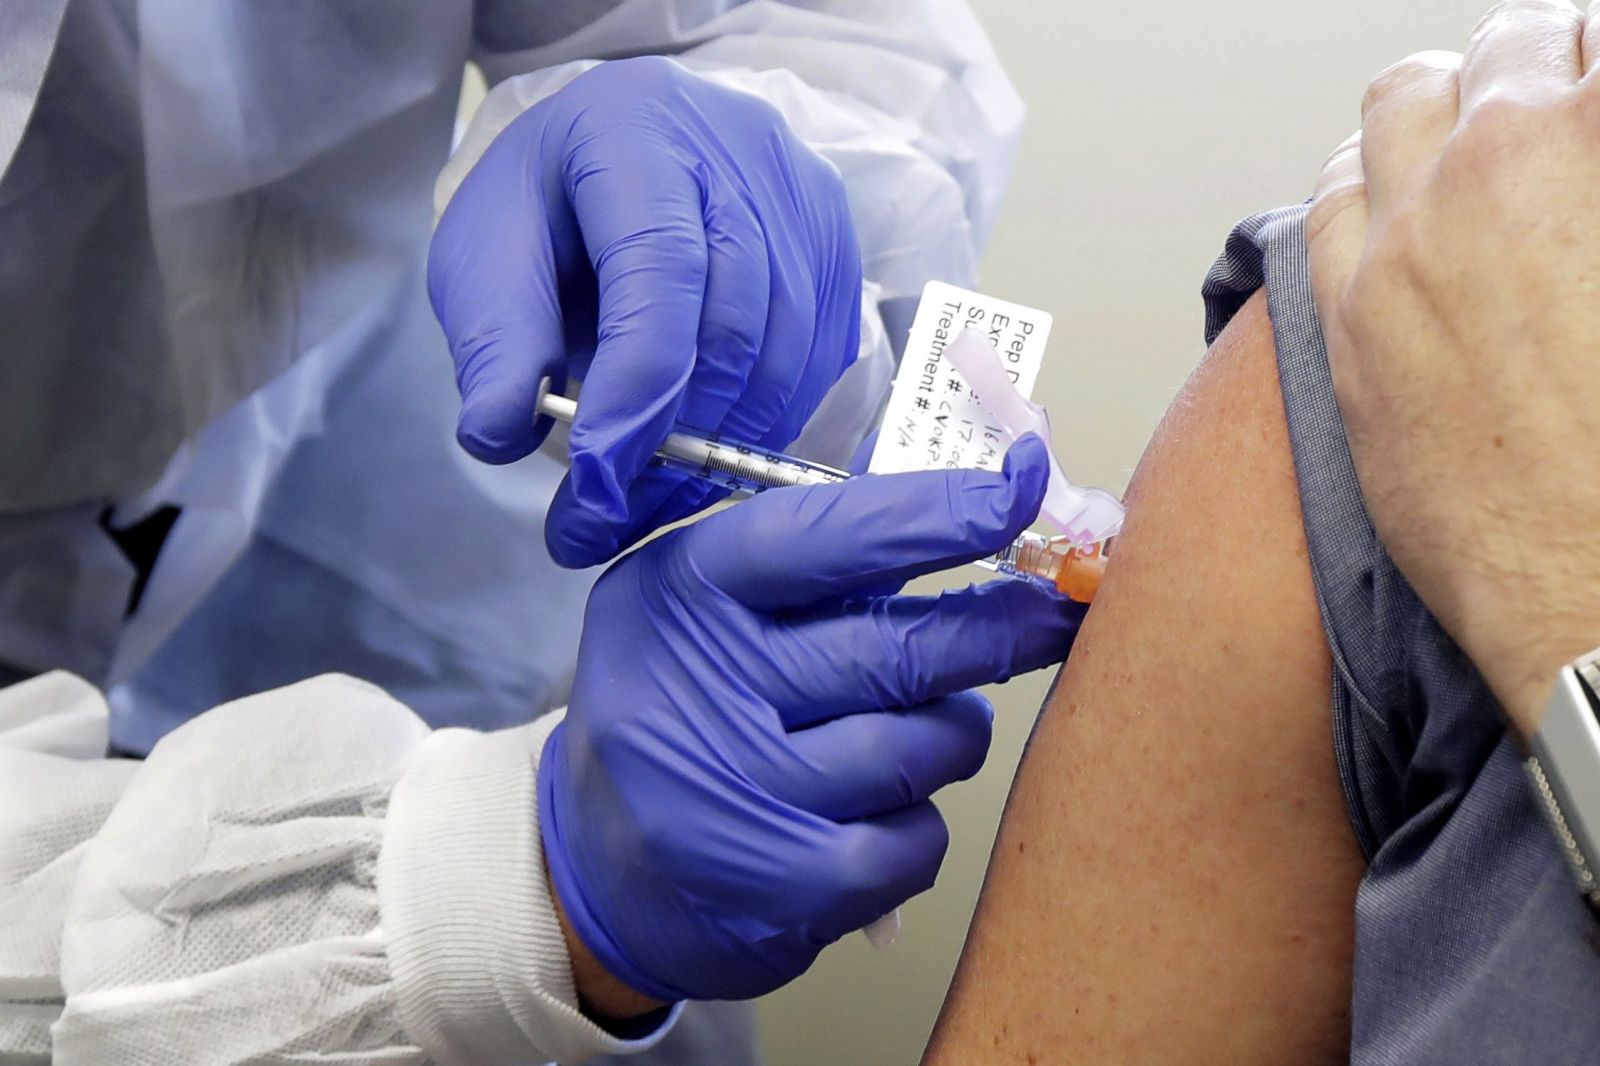 Slováci, ktorí neveria očkovaniu, by sa nedali zaočkovať ani proti koronavírusu, ukazuje prieskum SAV